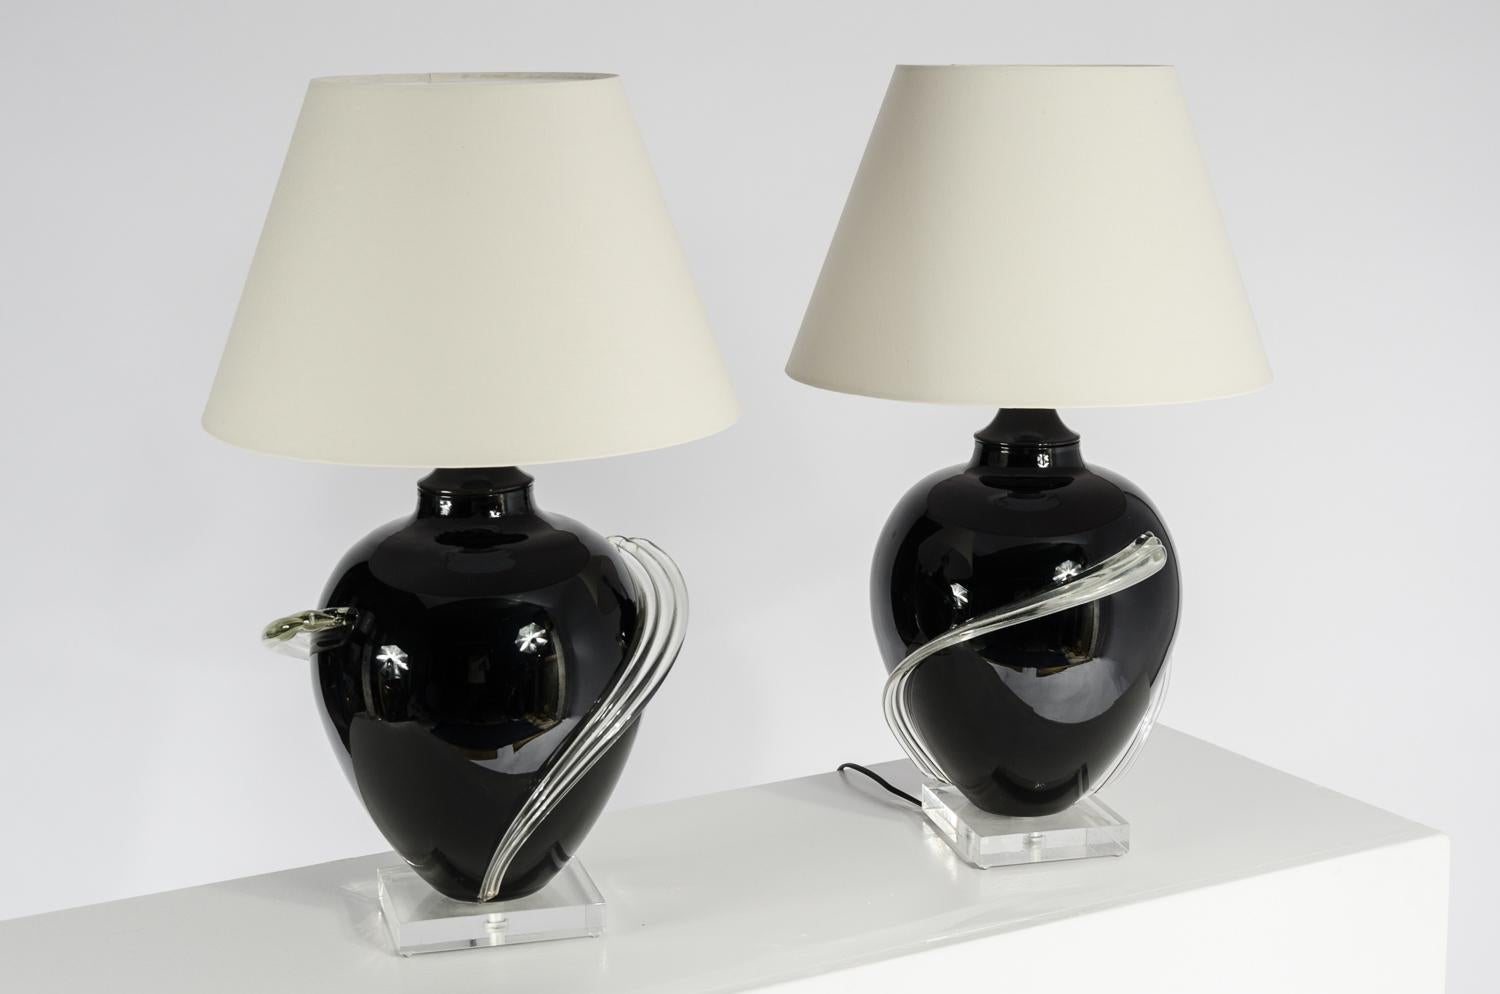 Paar Tischlampen aus Muranoglas und Lucit, ca. 1980er Jahre. Neu verkabelt. Die Lampen werden ohne Schirme verkauft.